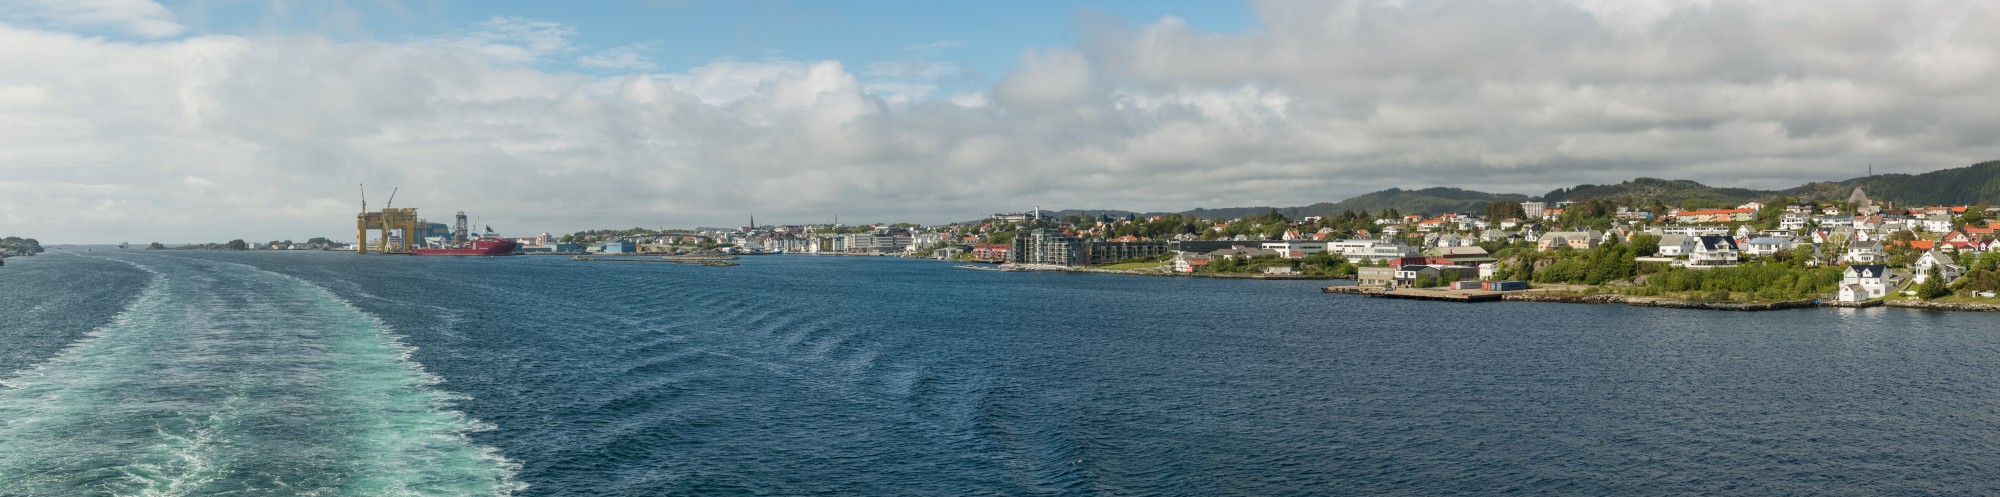 South view of Haugesund 20150618 1